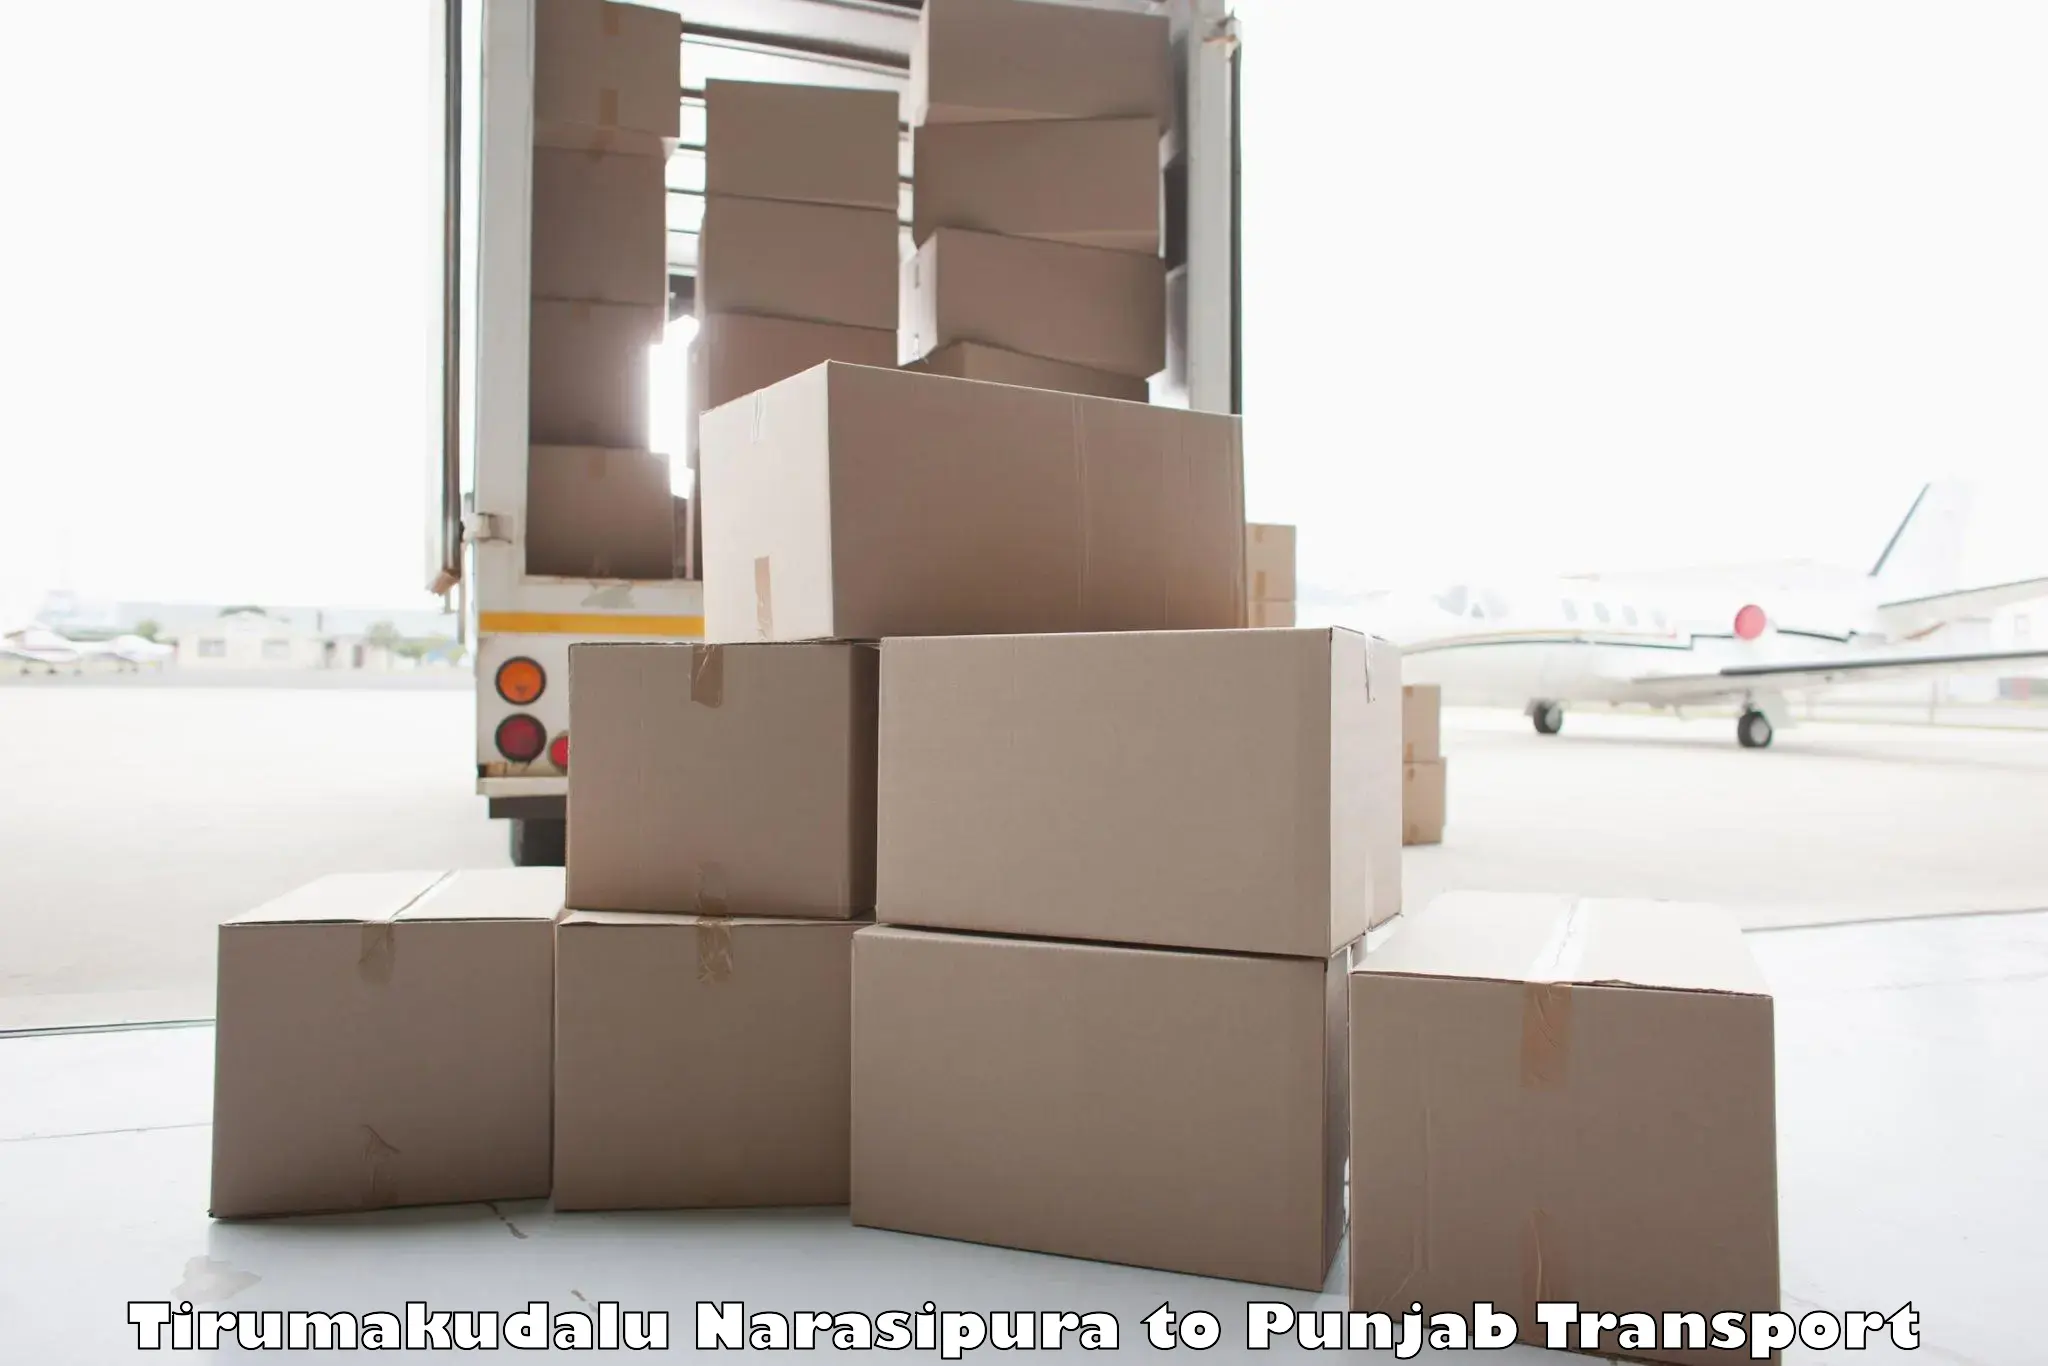 Daily parcel service transport Tirumakudalu Narasipura to Dhilwan